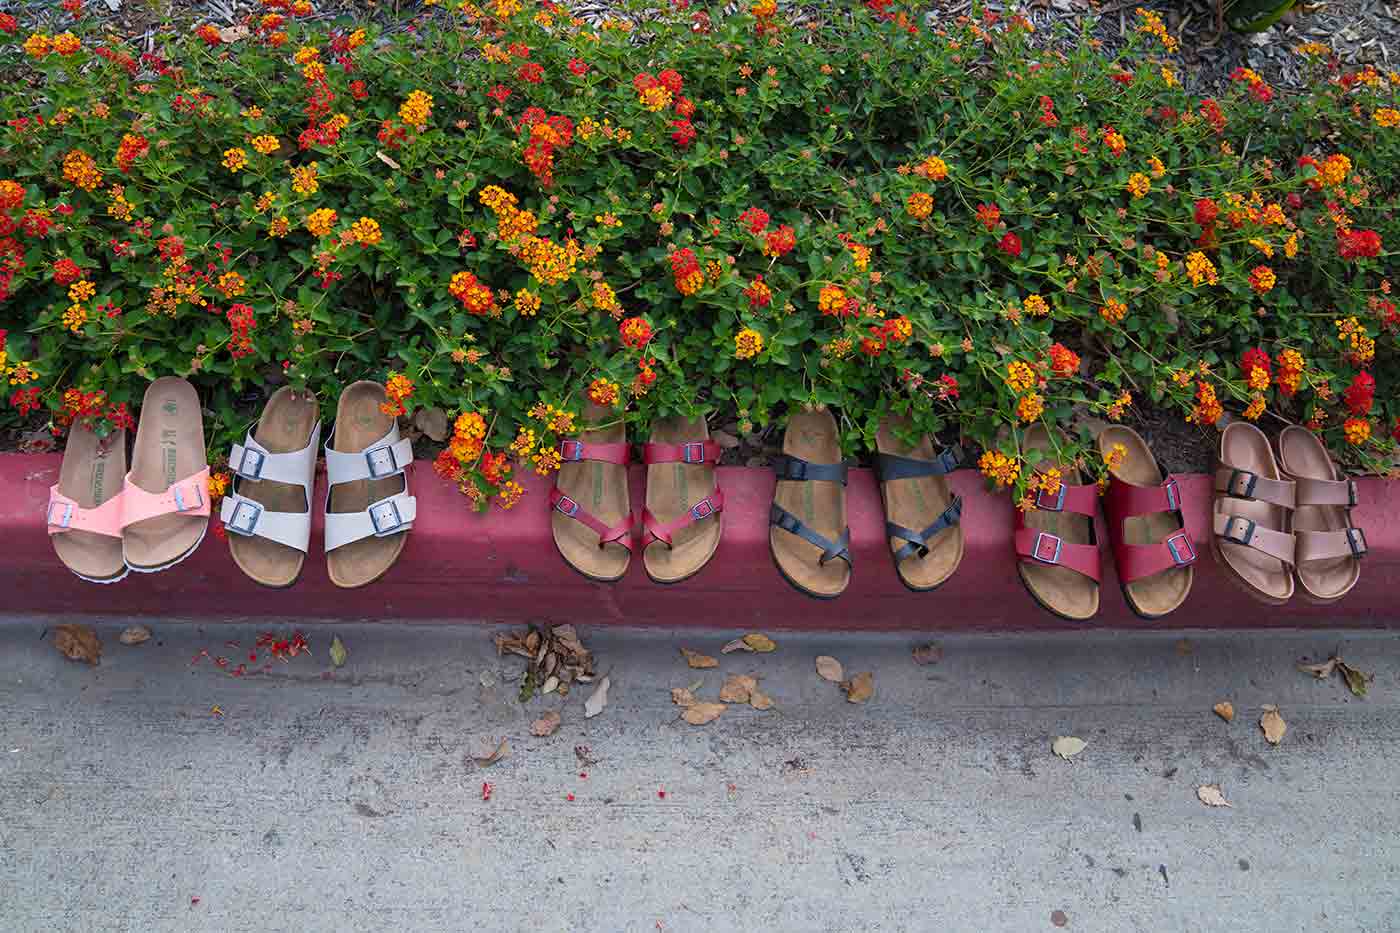 New Birkenstock Sandals Have Arrived at Nordstrom for Spring